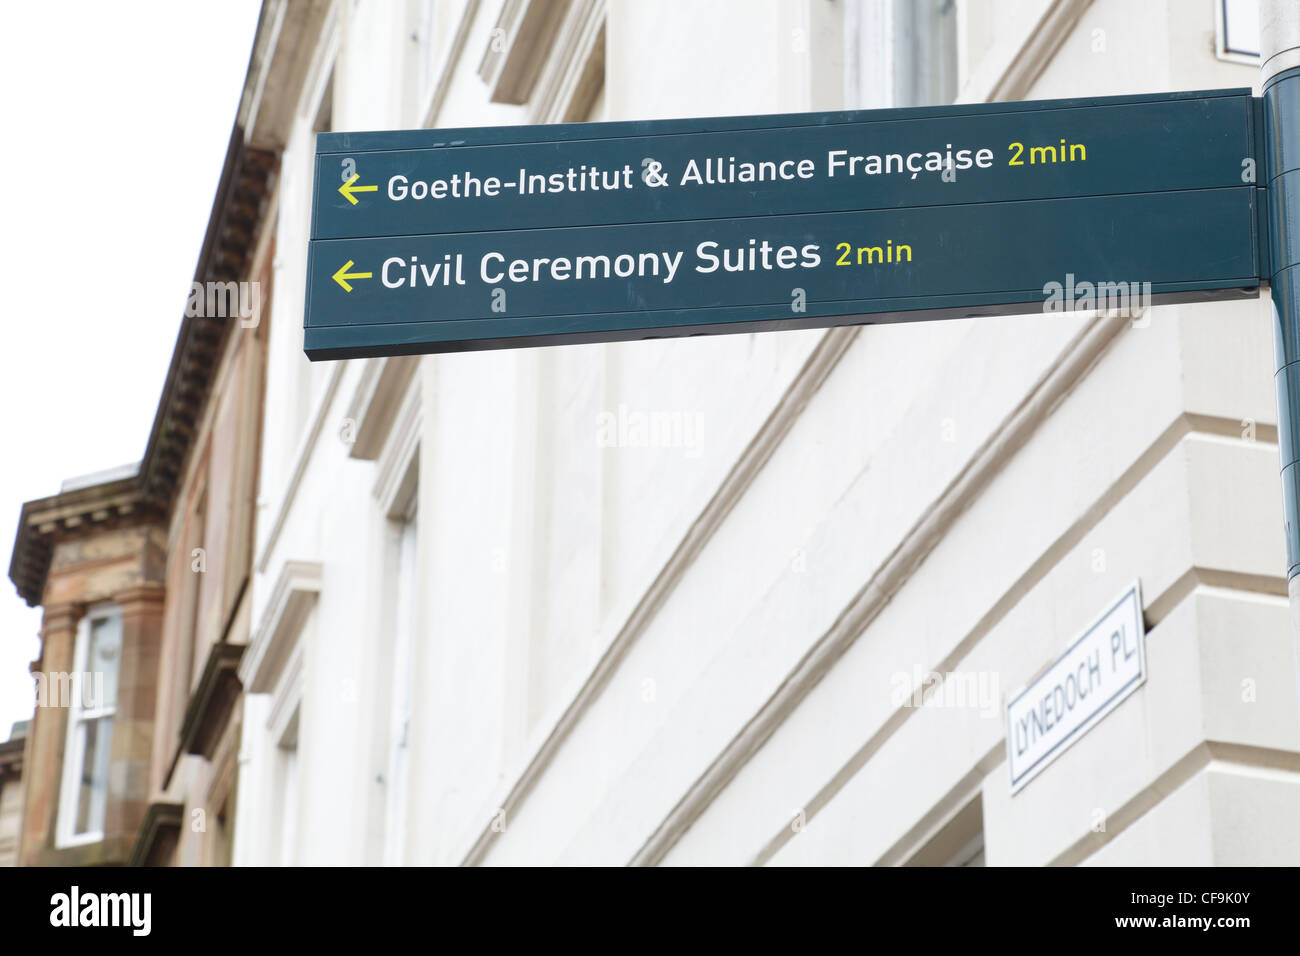 Estas suites de la Ceremonia Civil están permanentemente cerradas. Goethe-Institut, Alliance Francaise y Civil Ceremony Suite señal de dirección, Glasgow, Escocia, Reino Unido Foto de stock